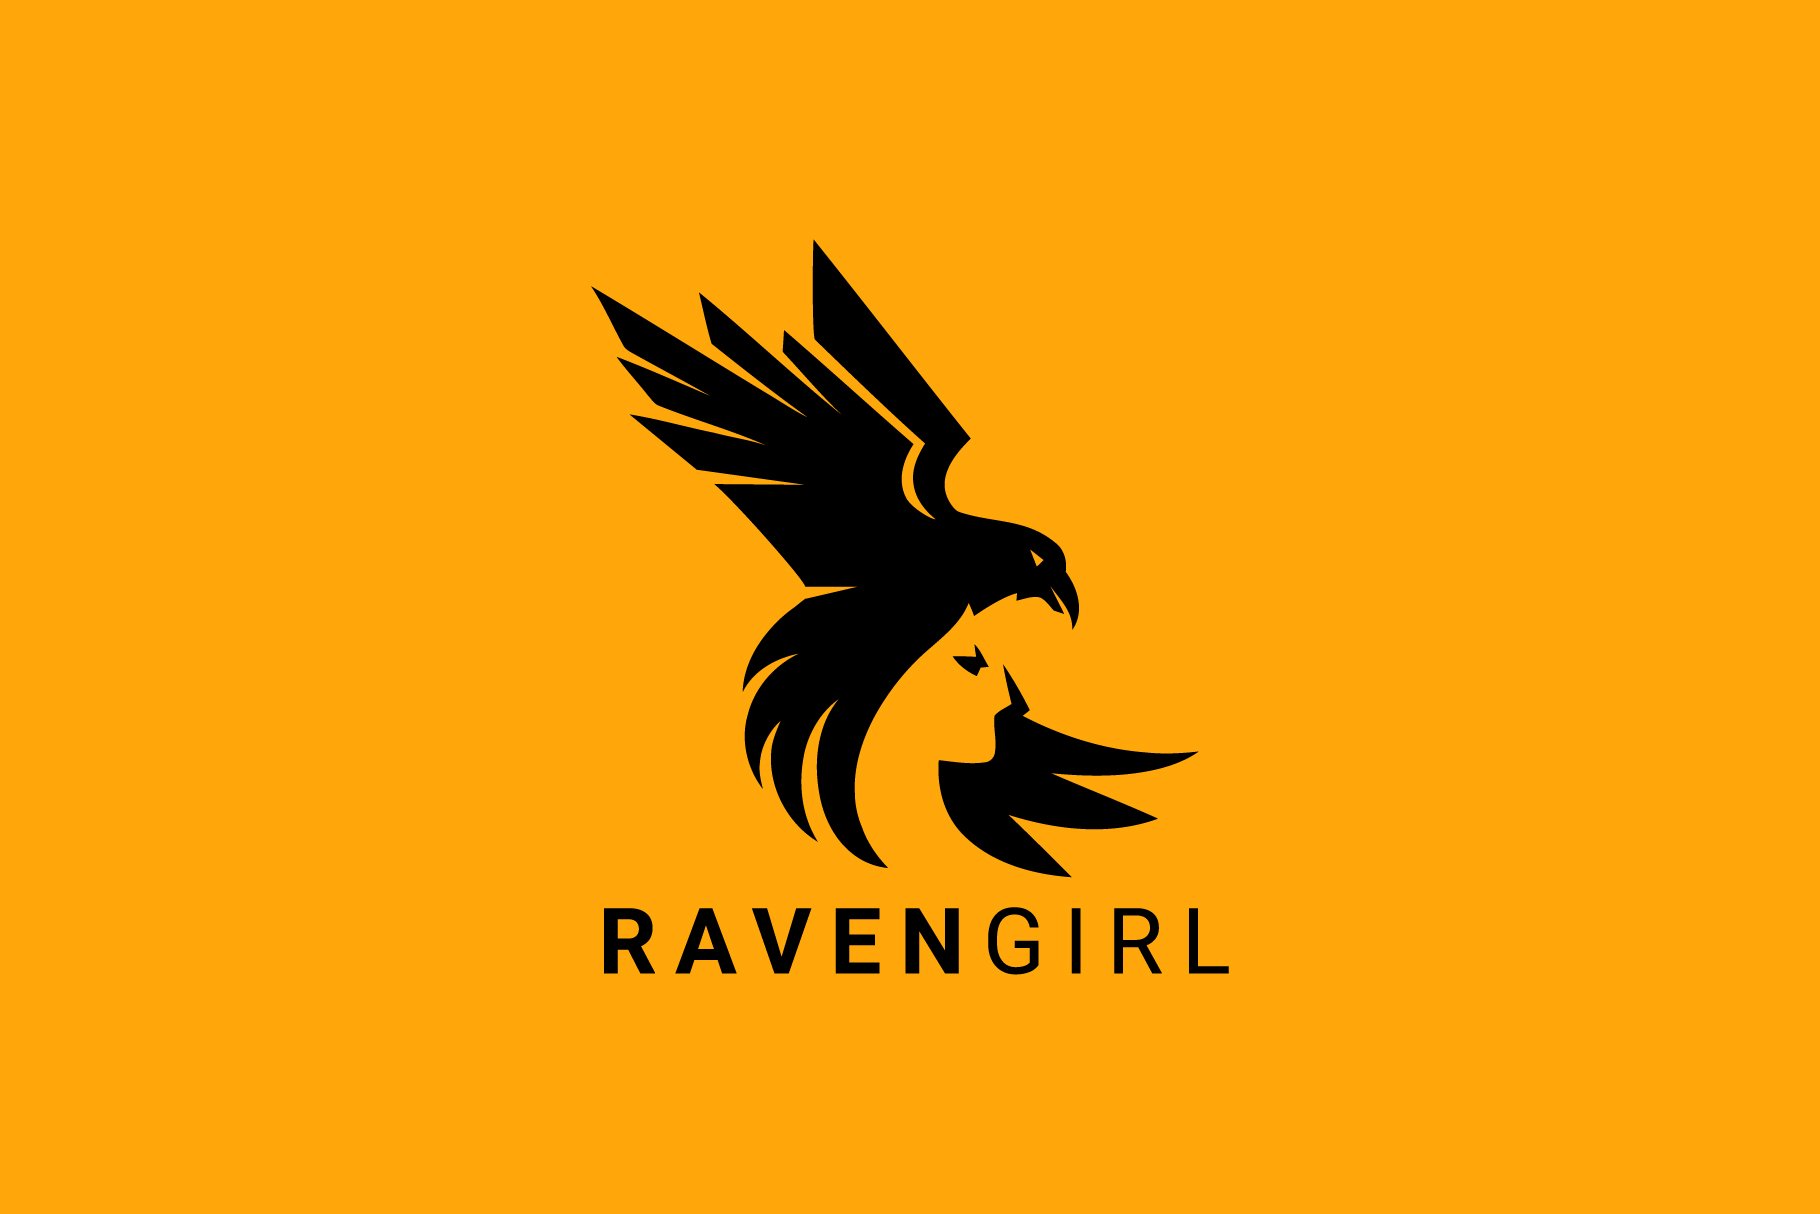 Raven Girl Logo cover image.